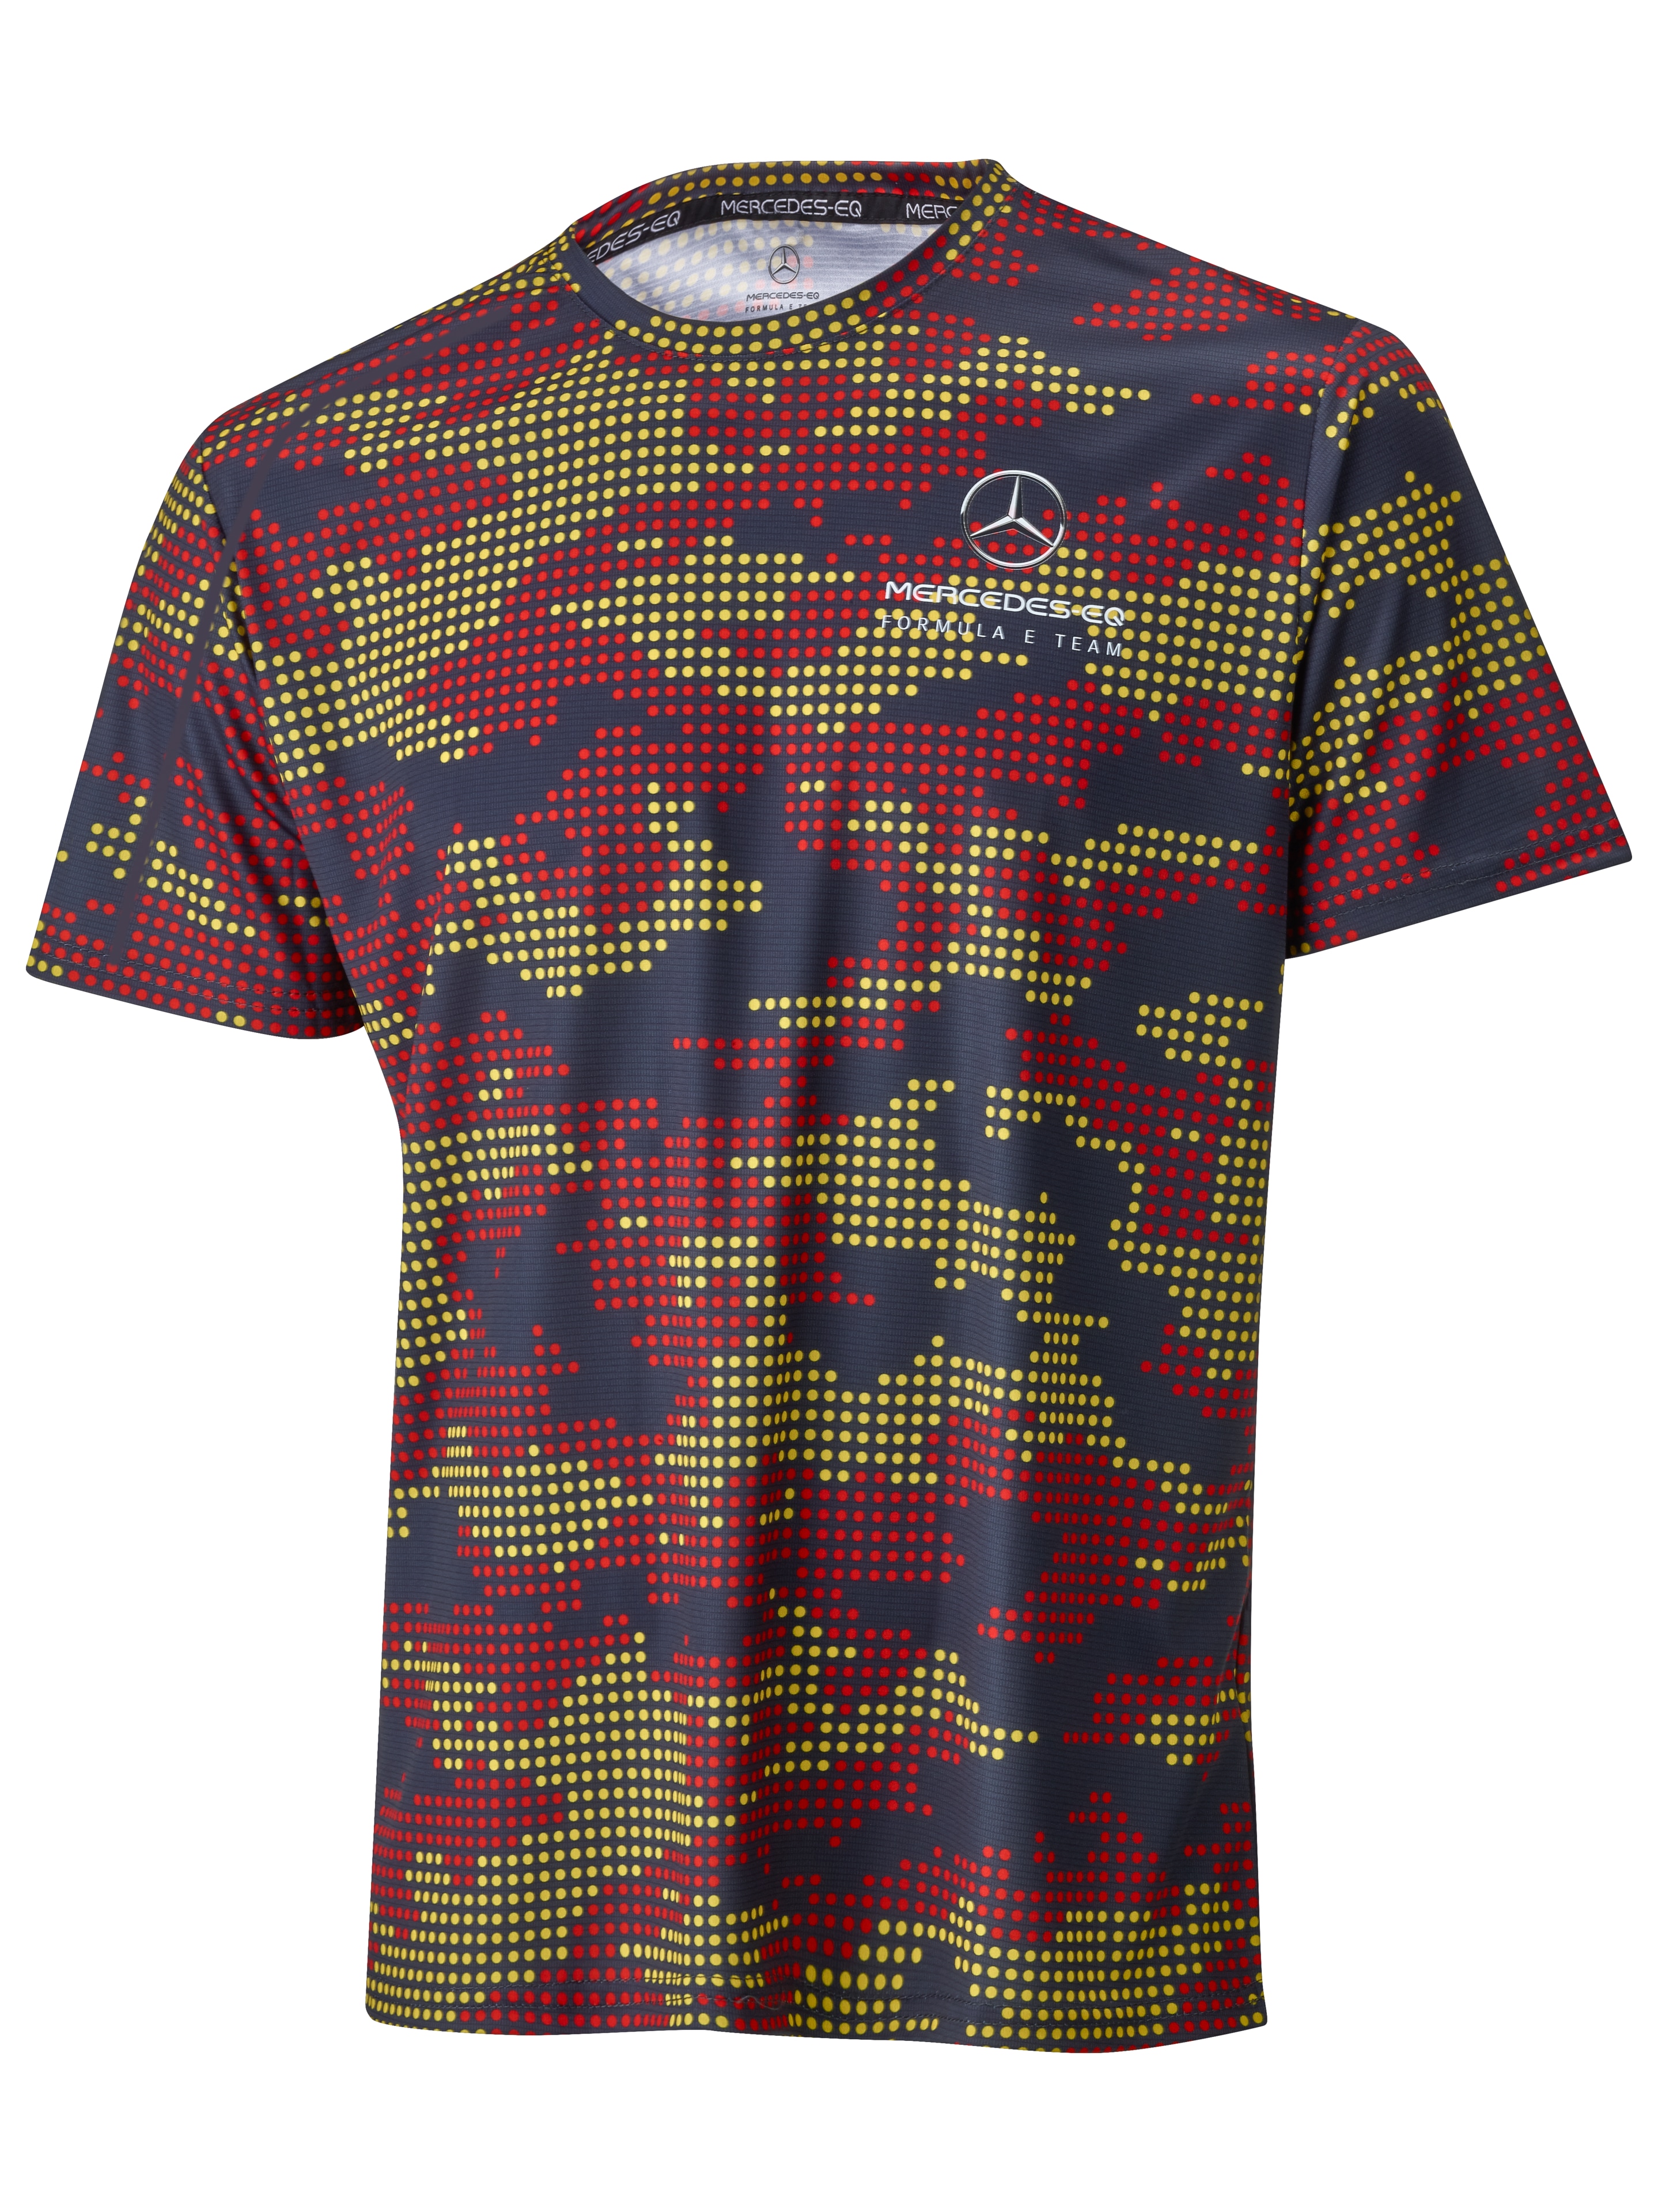 T-Shirt Herren - schwarz / rot / gelb, L